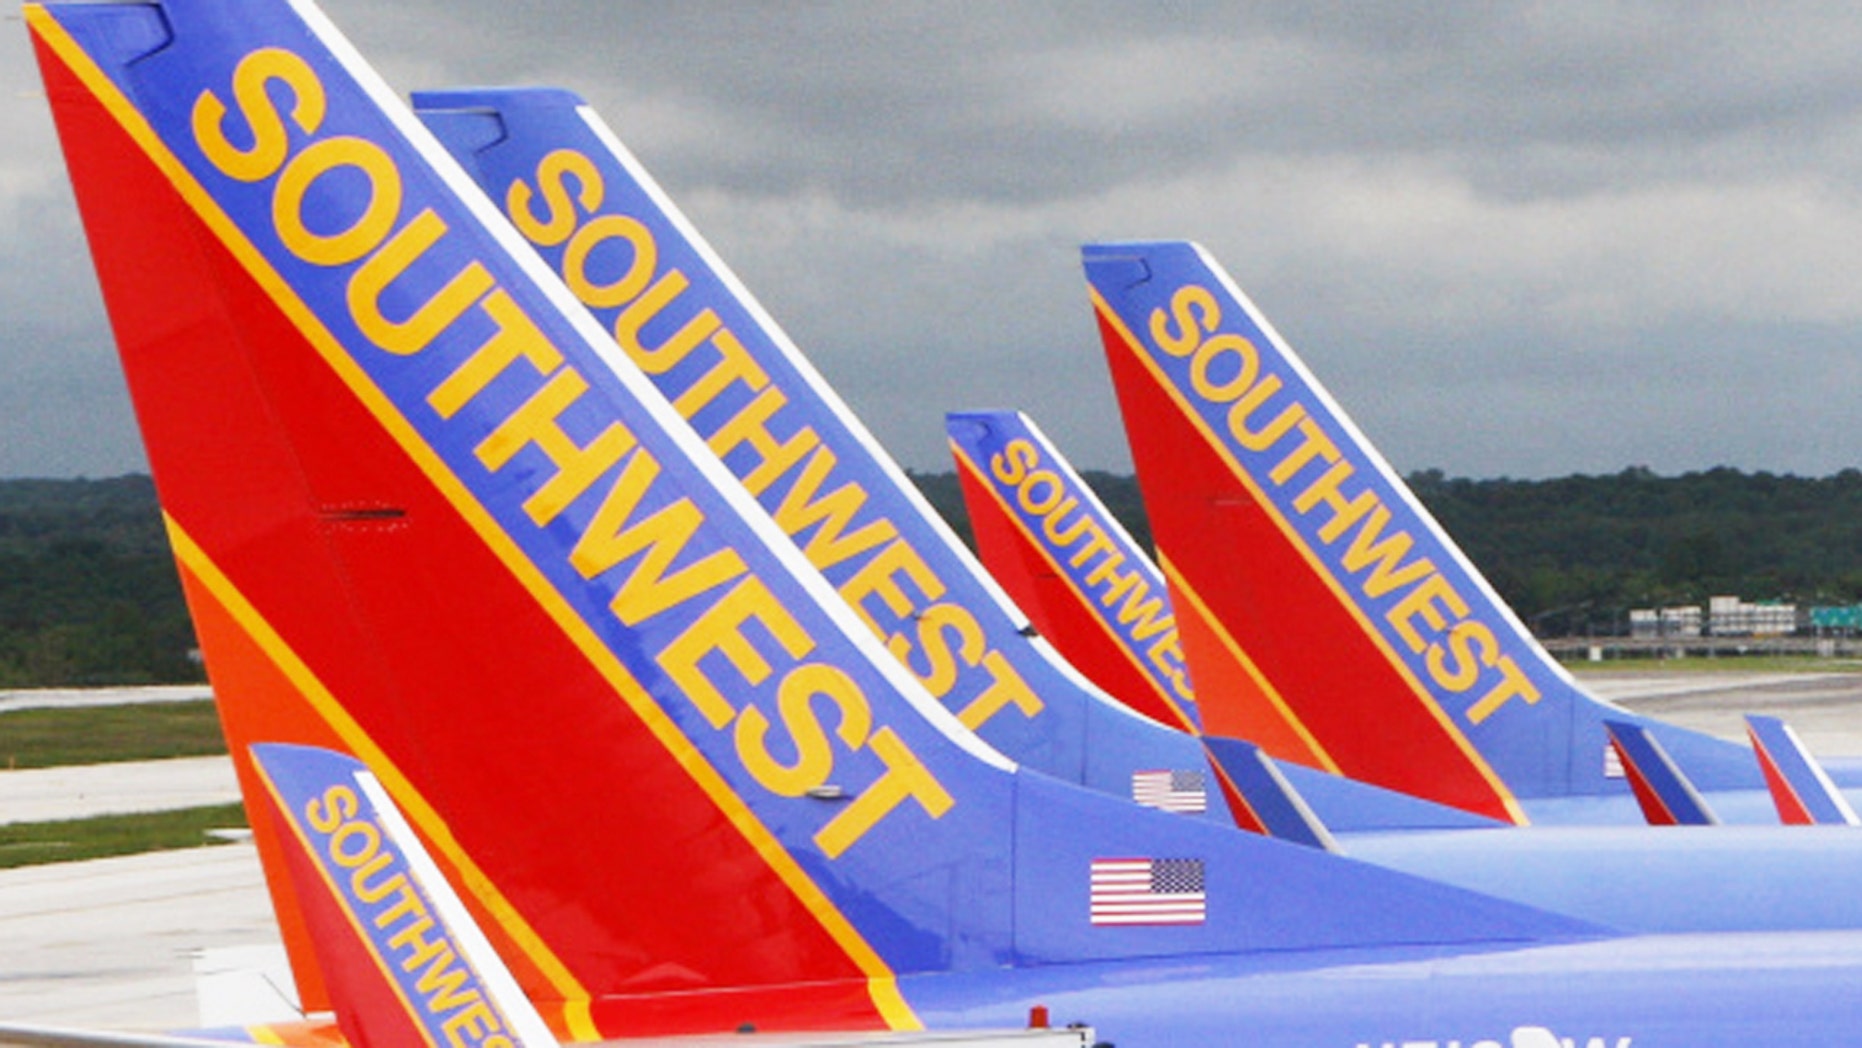 southwest flights grounded